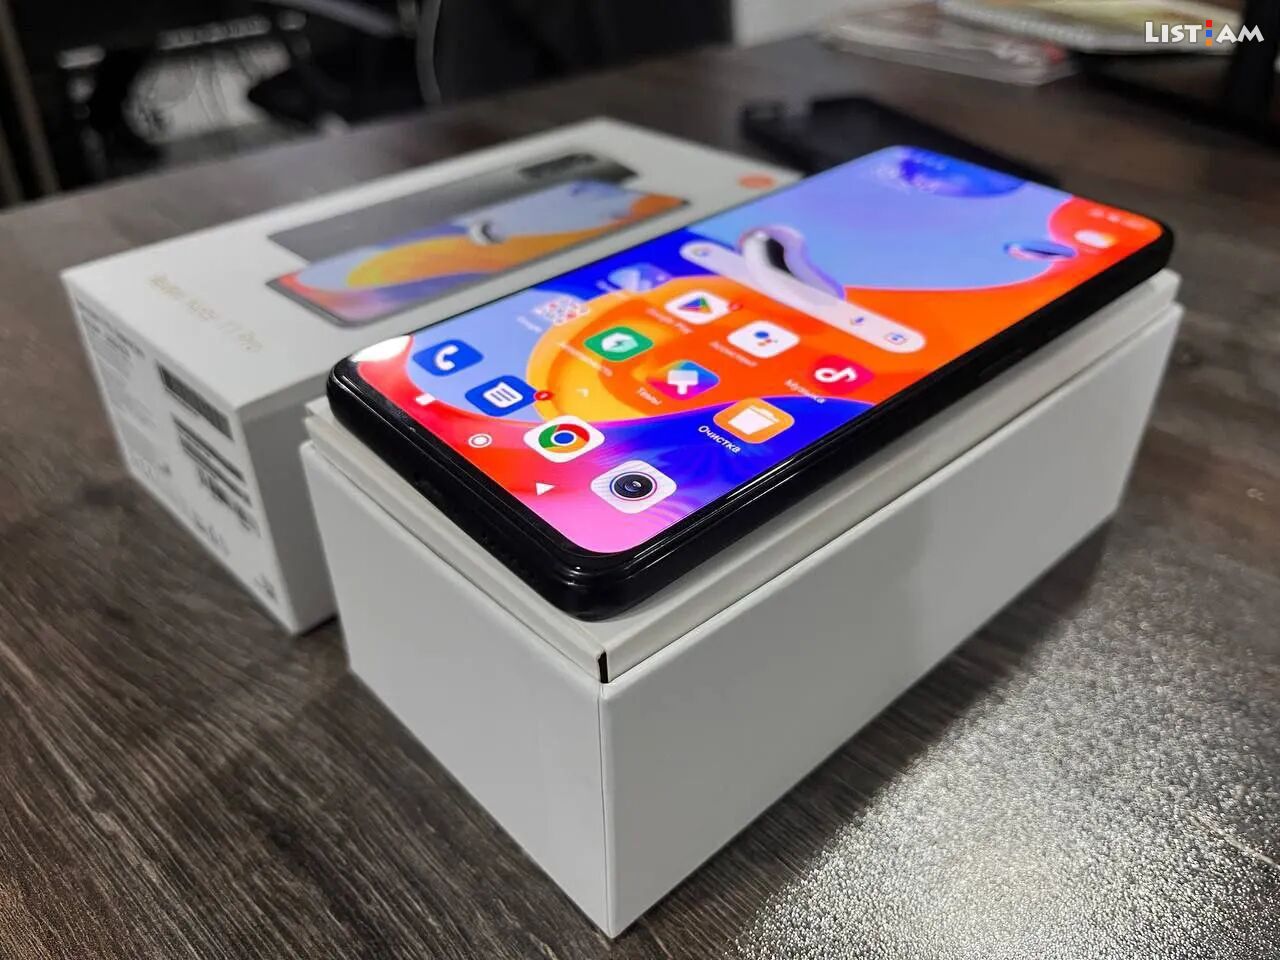 Xiaomi Redmi Note 11